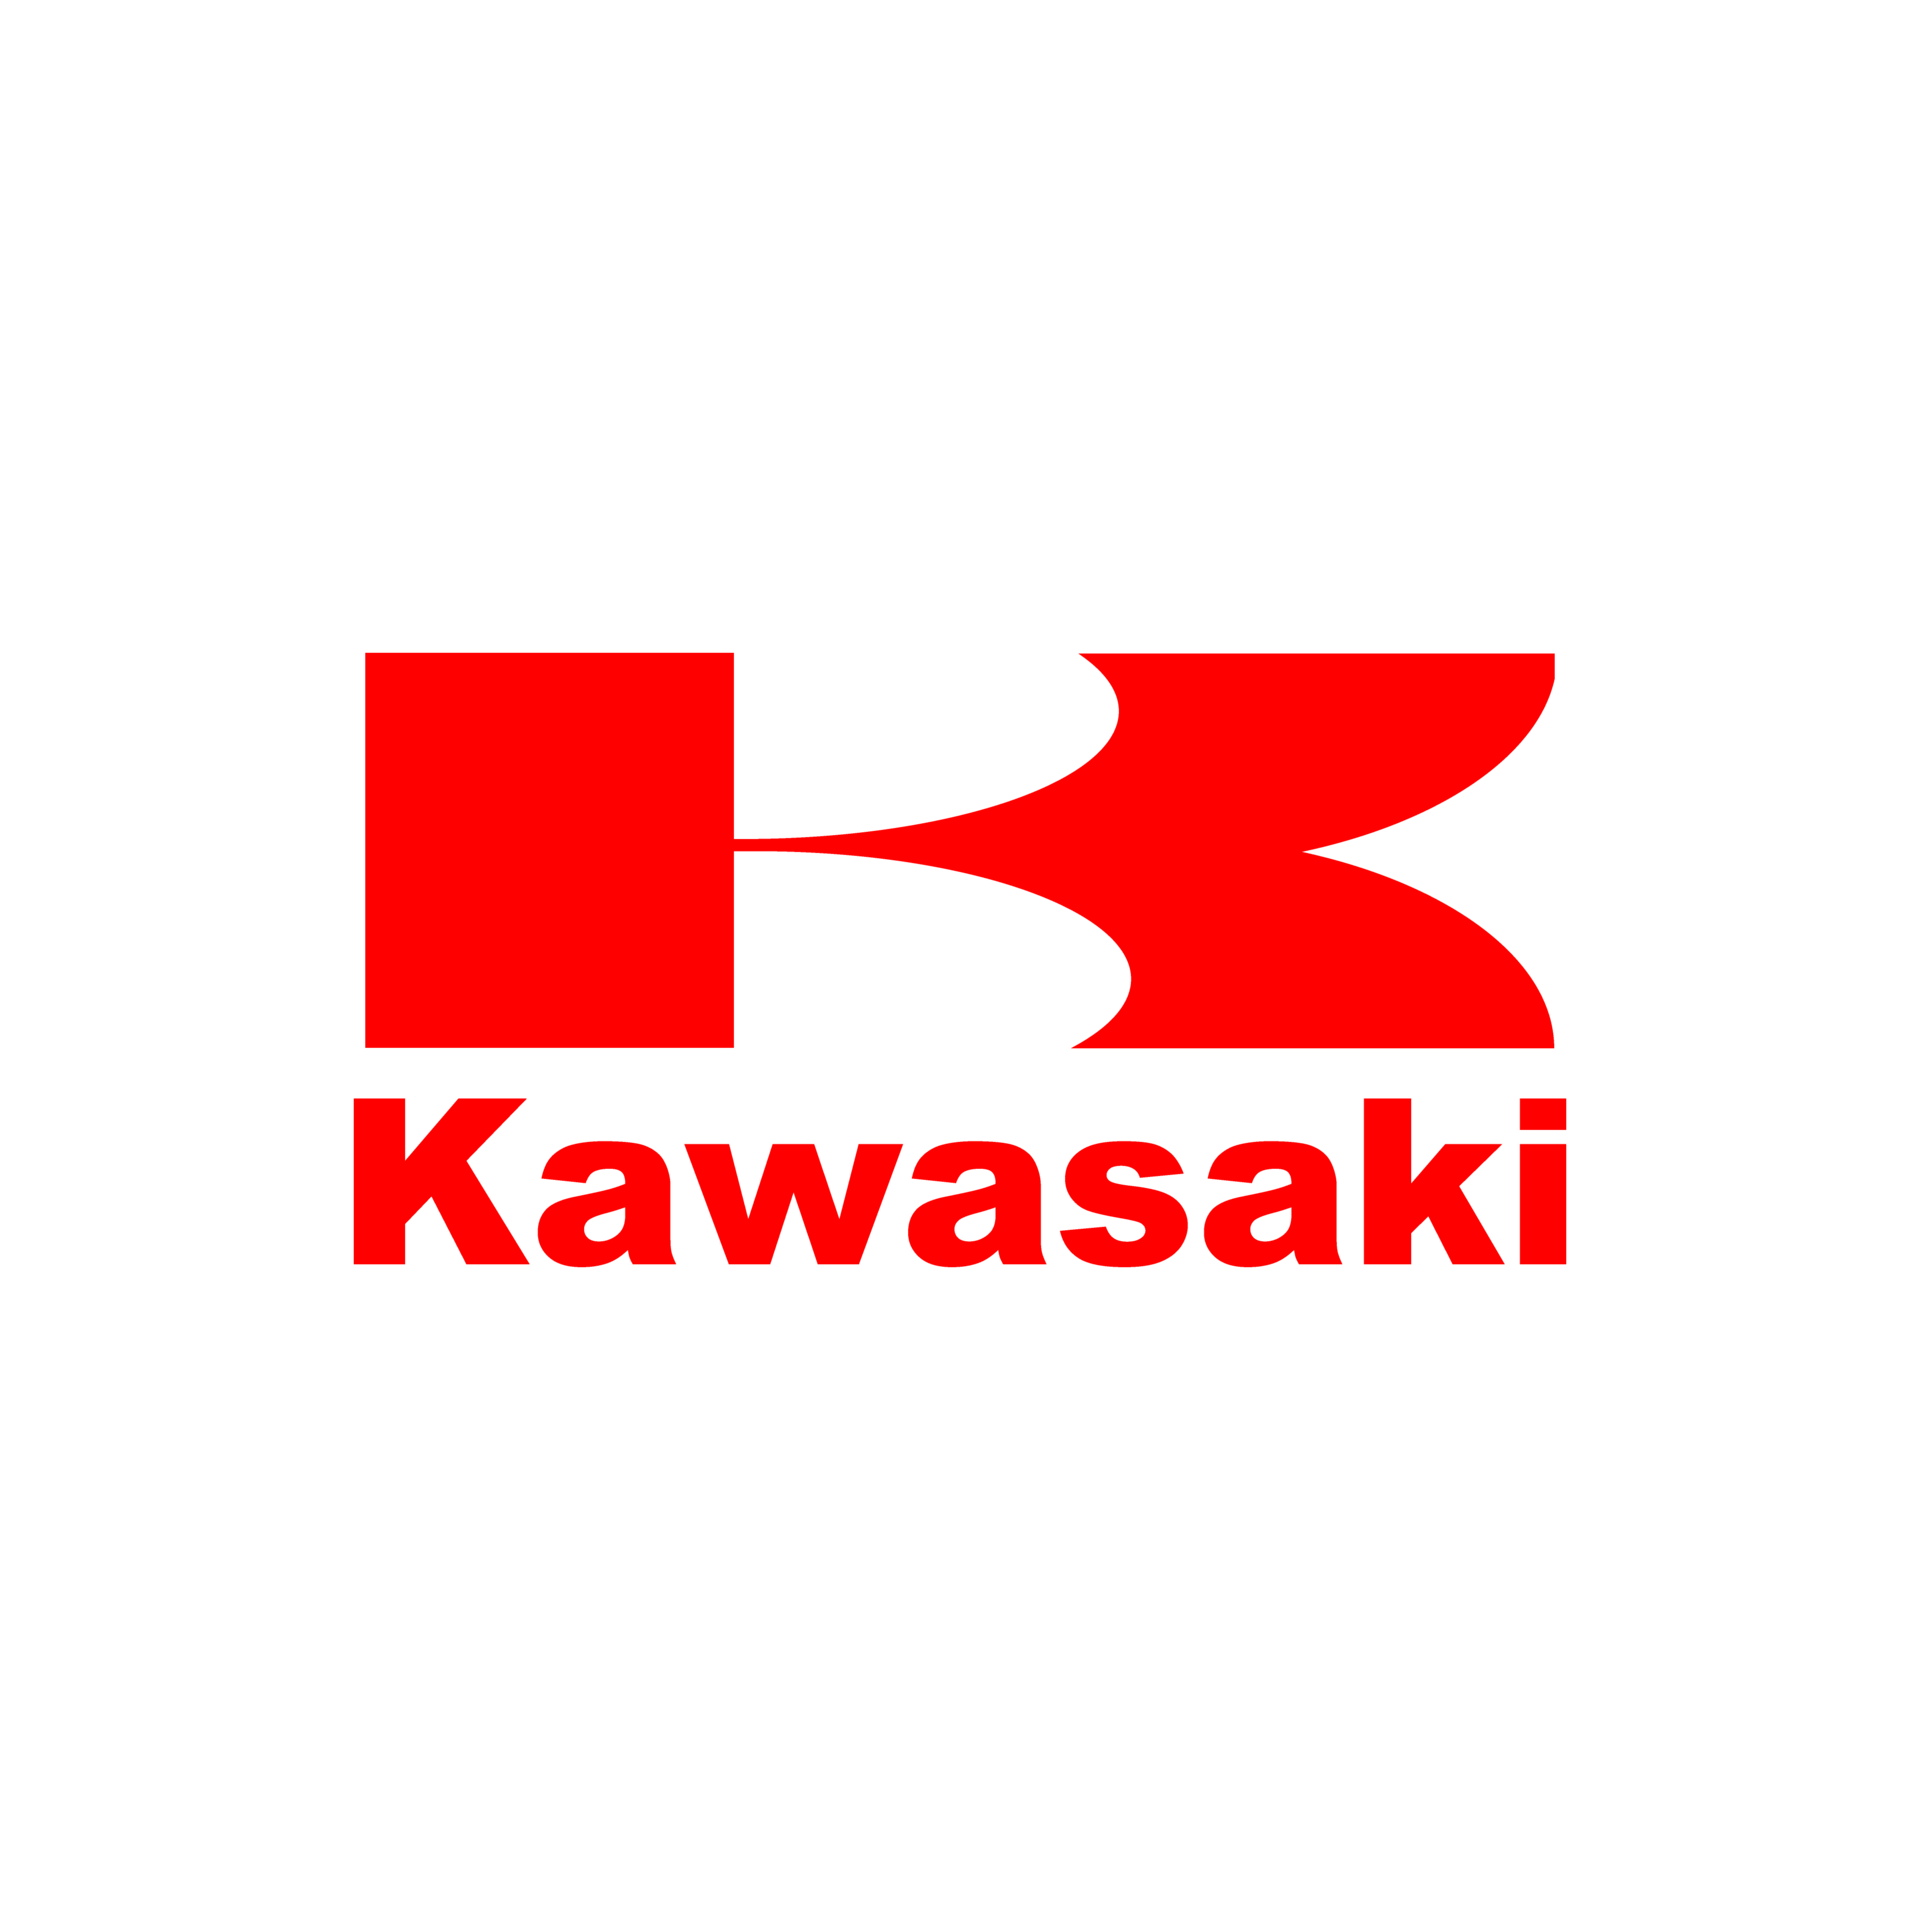 kawasaki-logo-transparent-free-png.webp